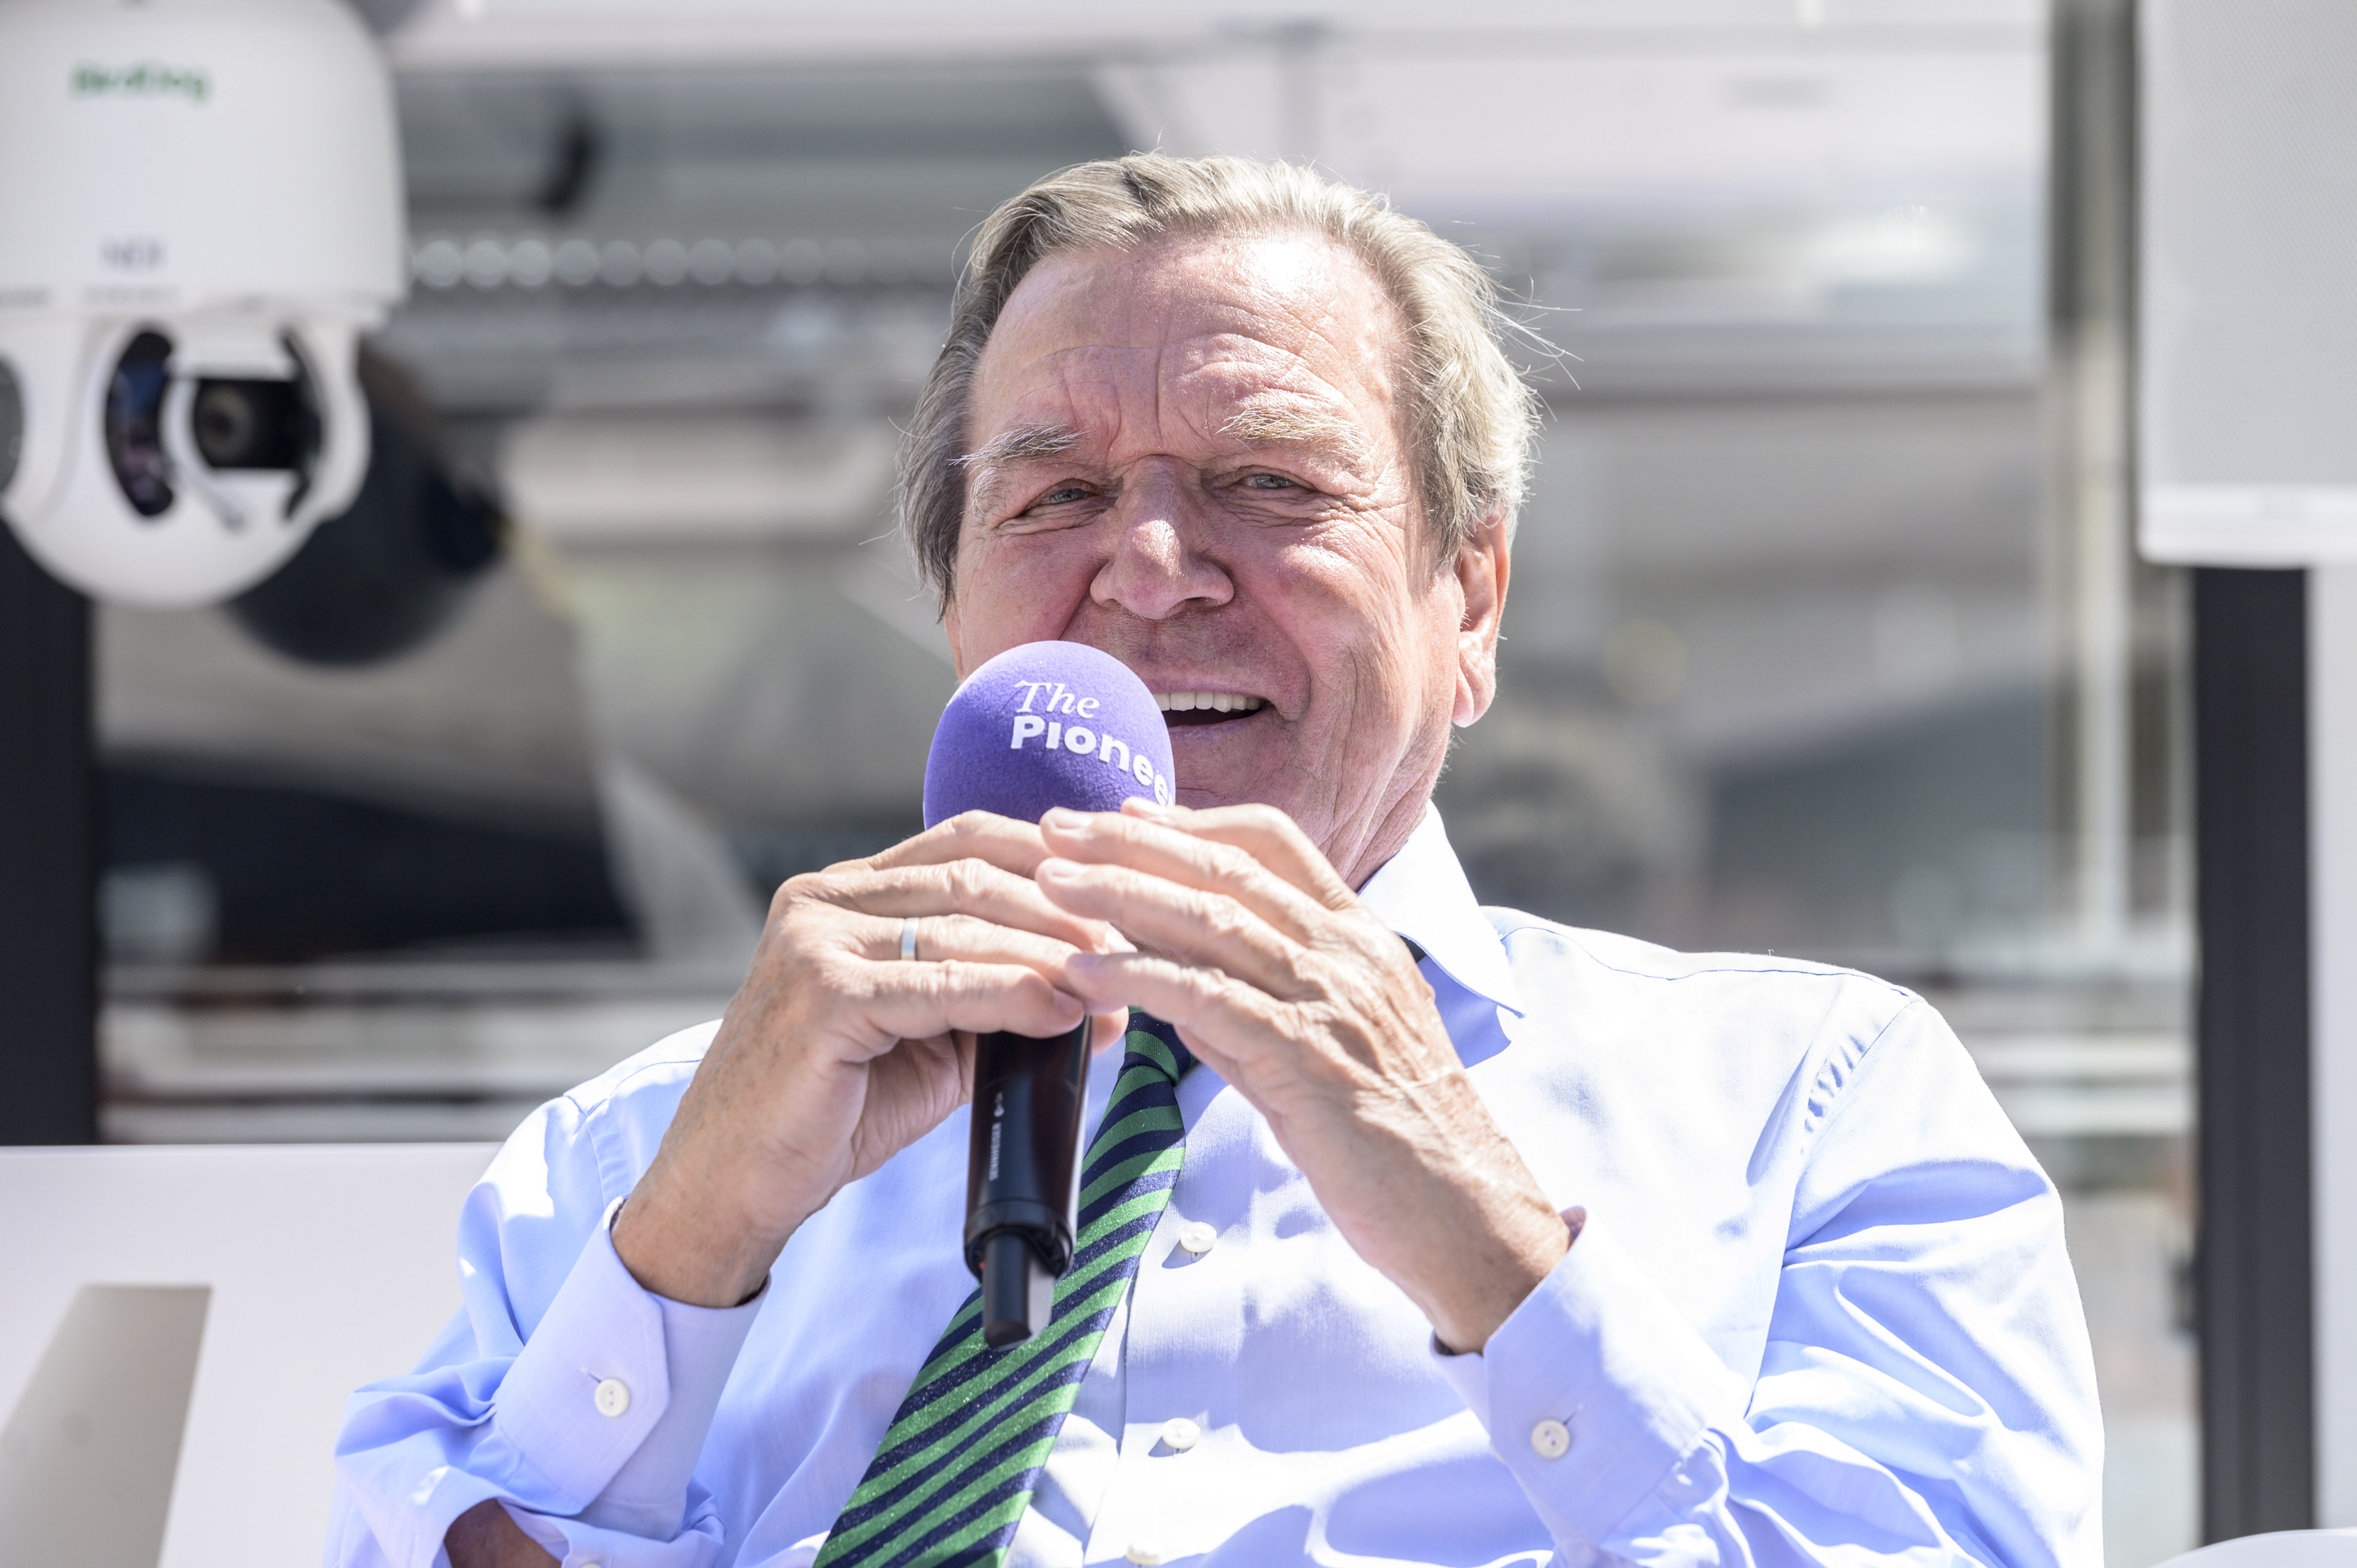 Altkanzler Gerhard Schröder gerät beim Politischen Sightseeing in Sinnieren